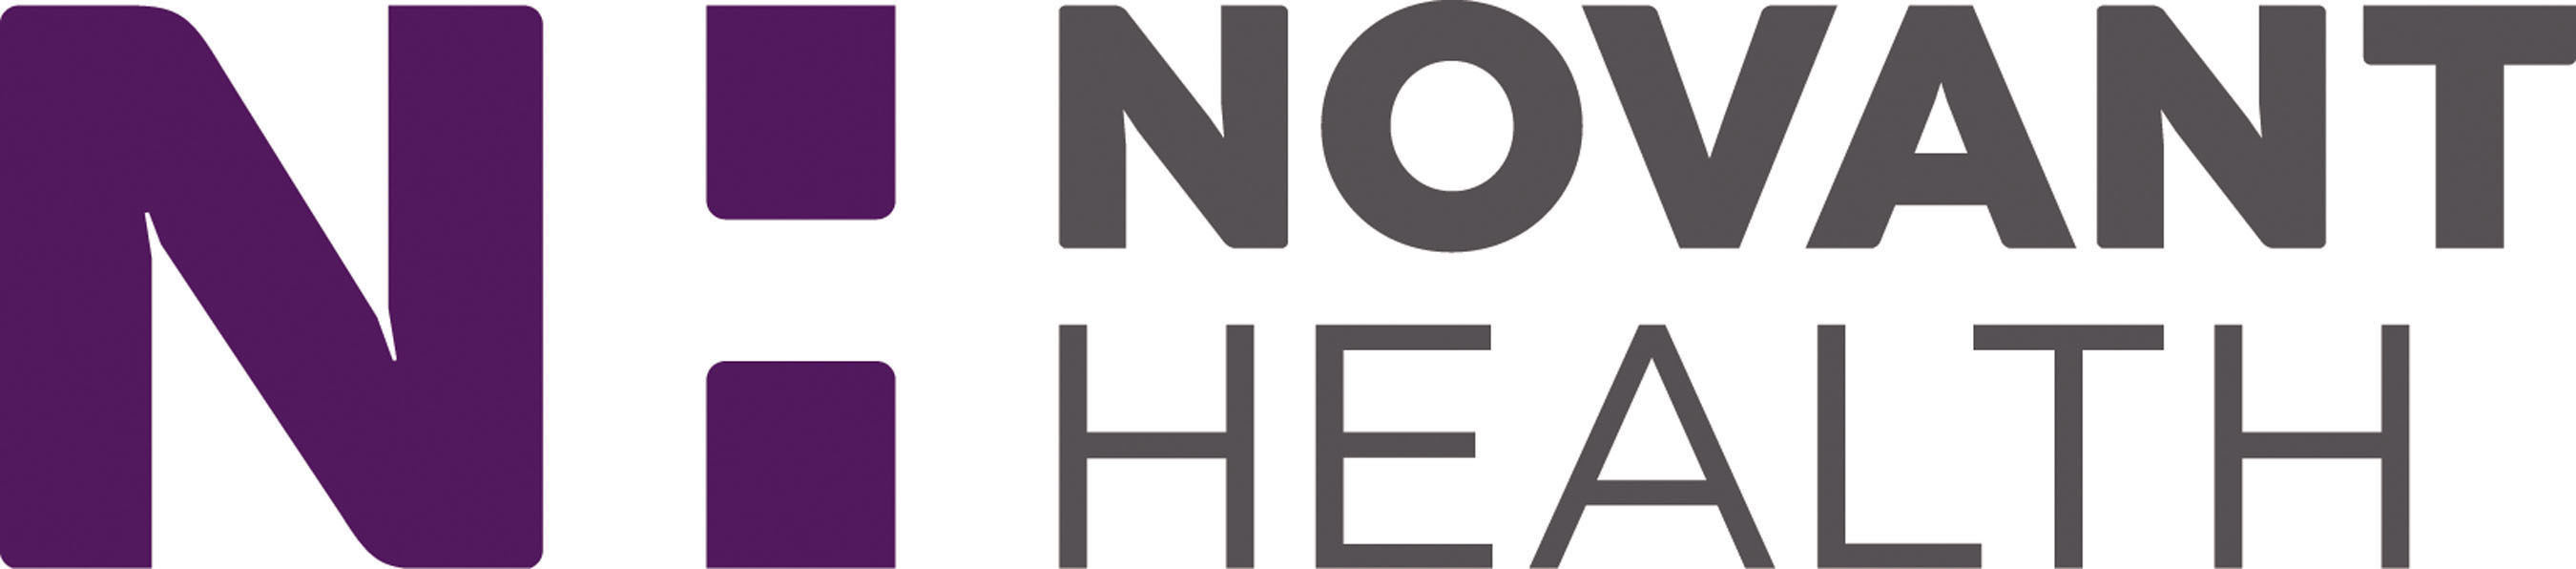 Novant Health Chooses Voalte Platform for Caregiver Communication at 14